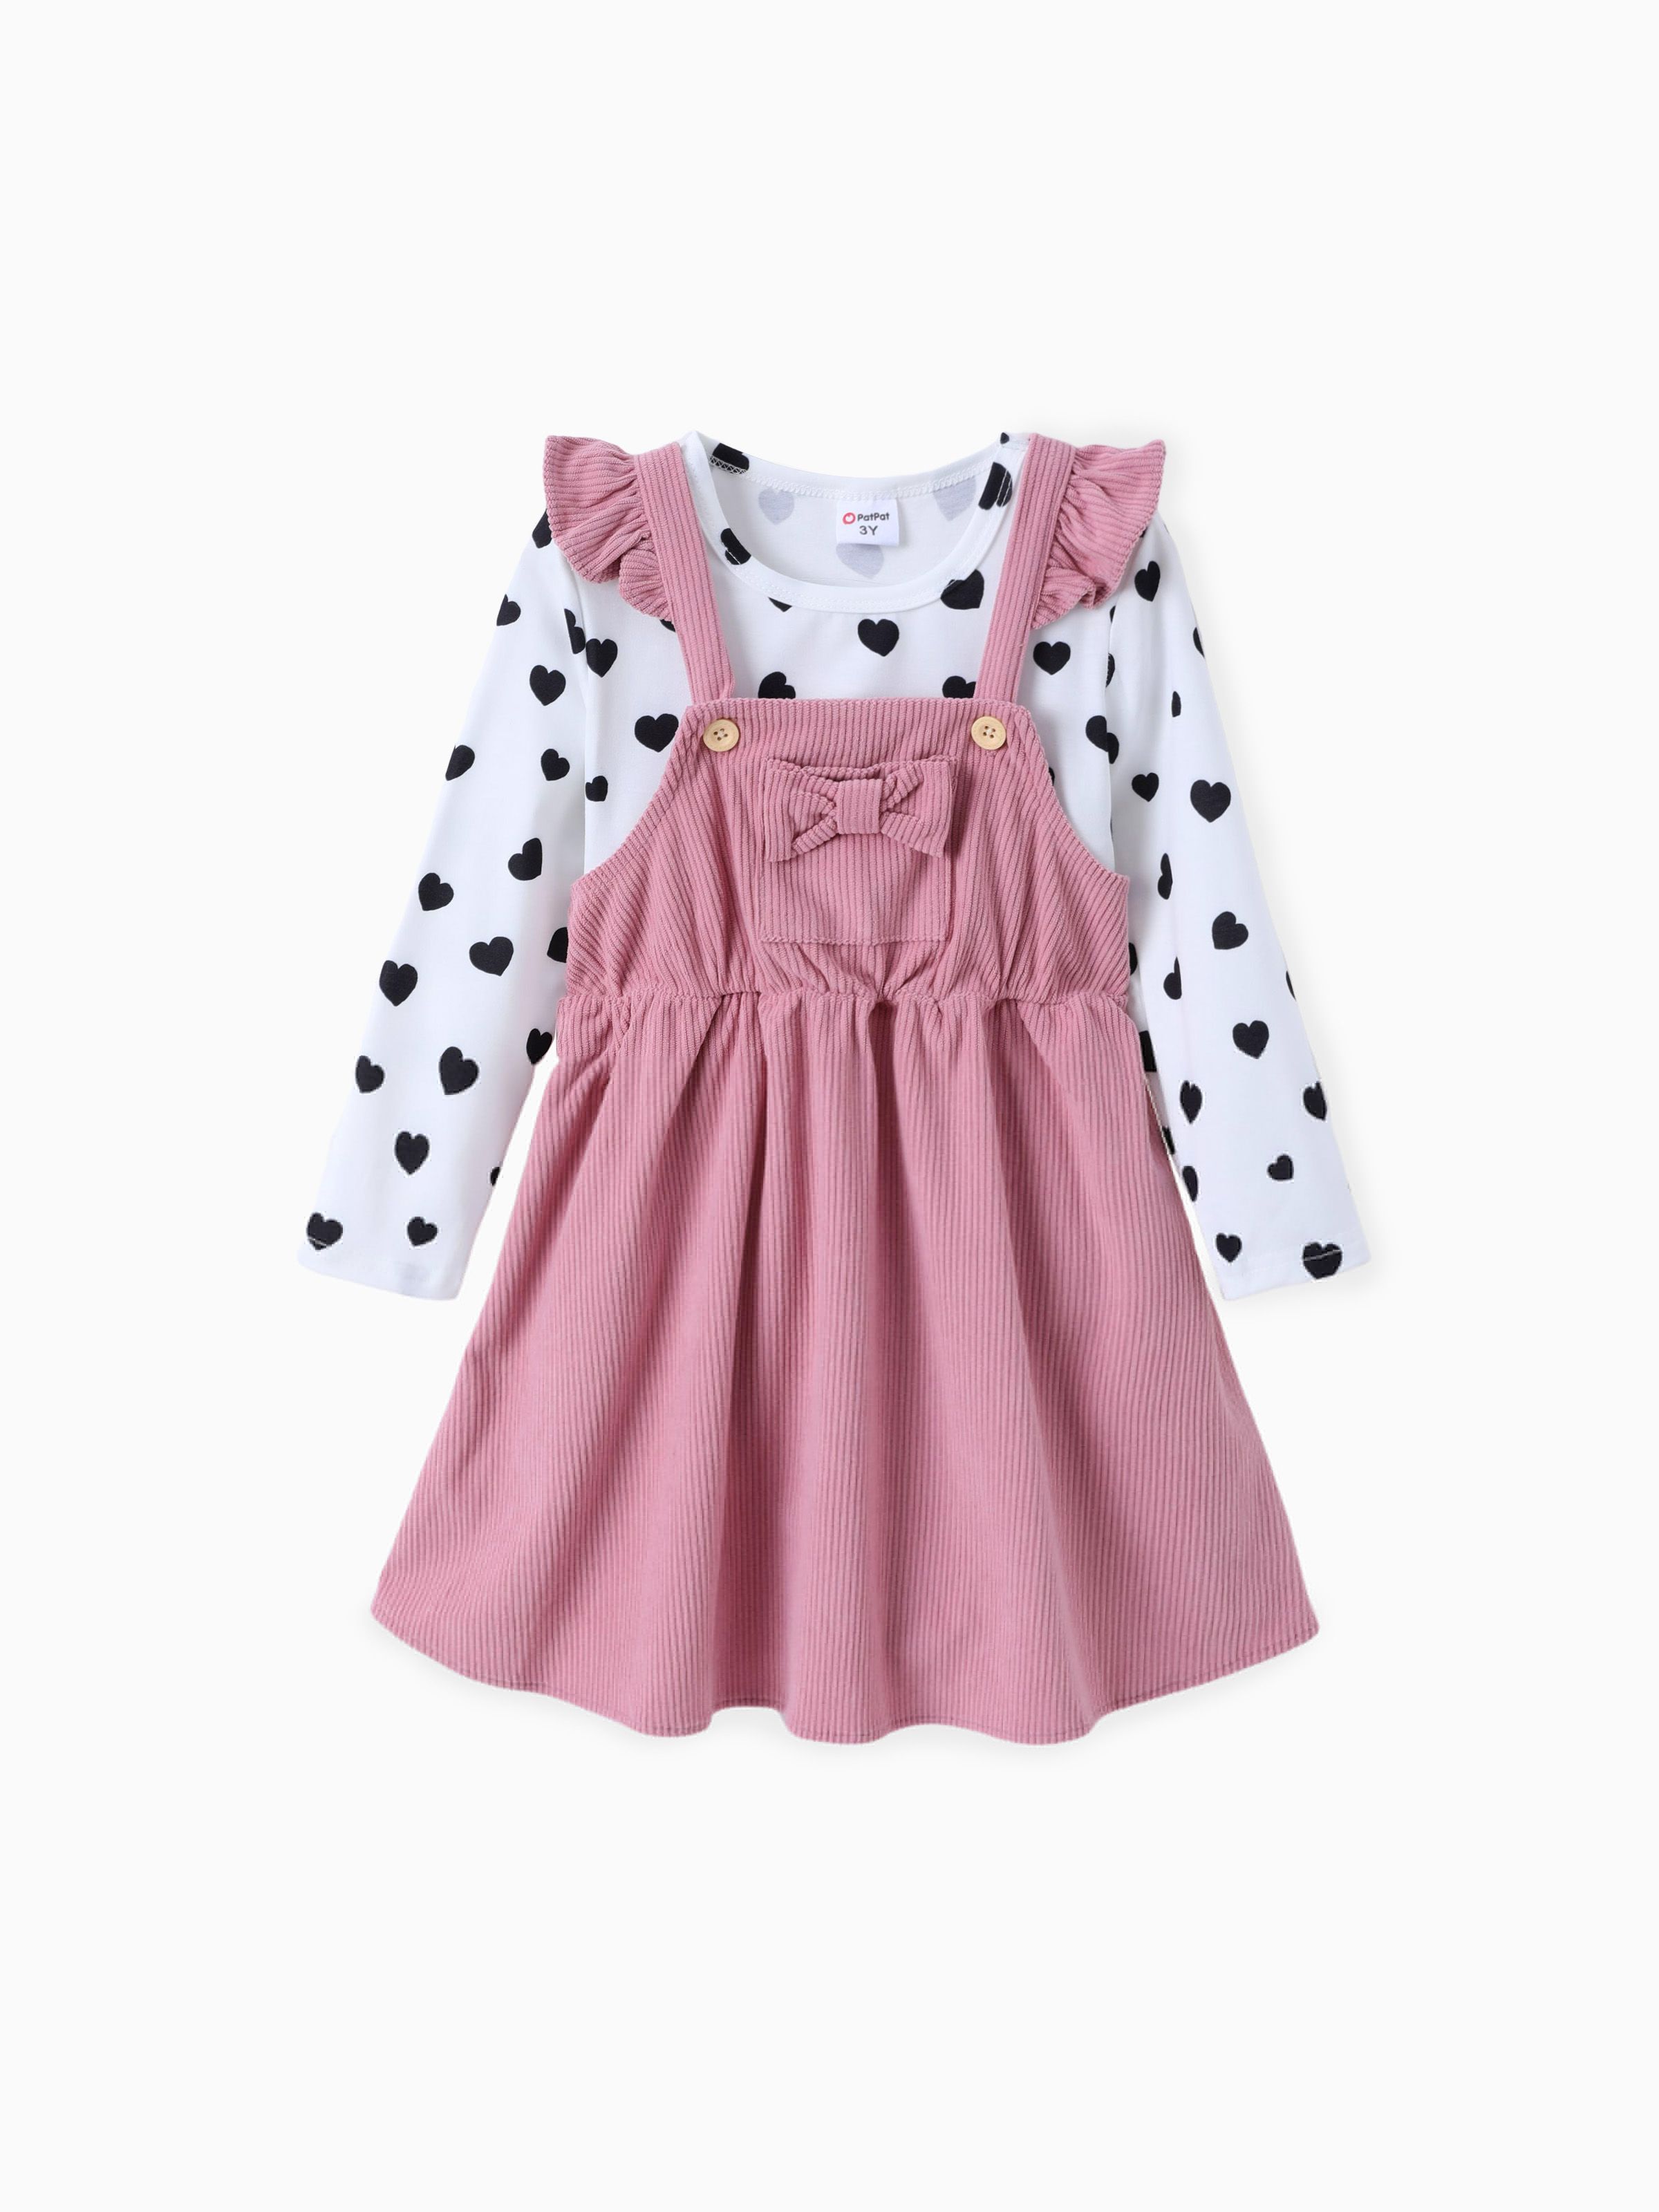 

Toddler Girl 2pcs Polka Dot Tee and Overall Dress Set